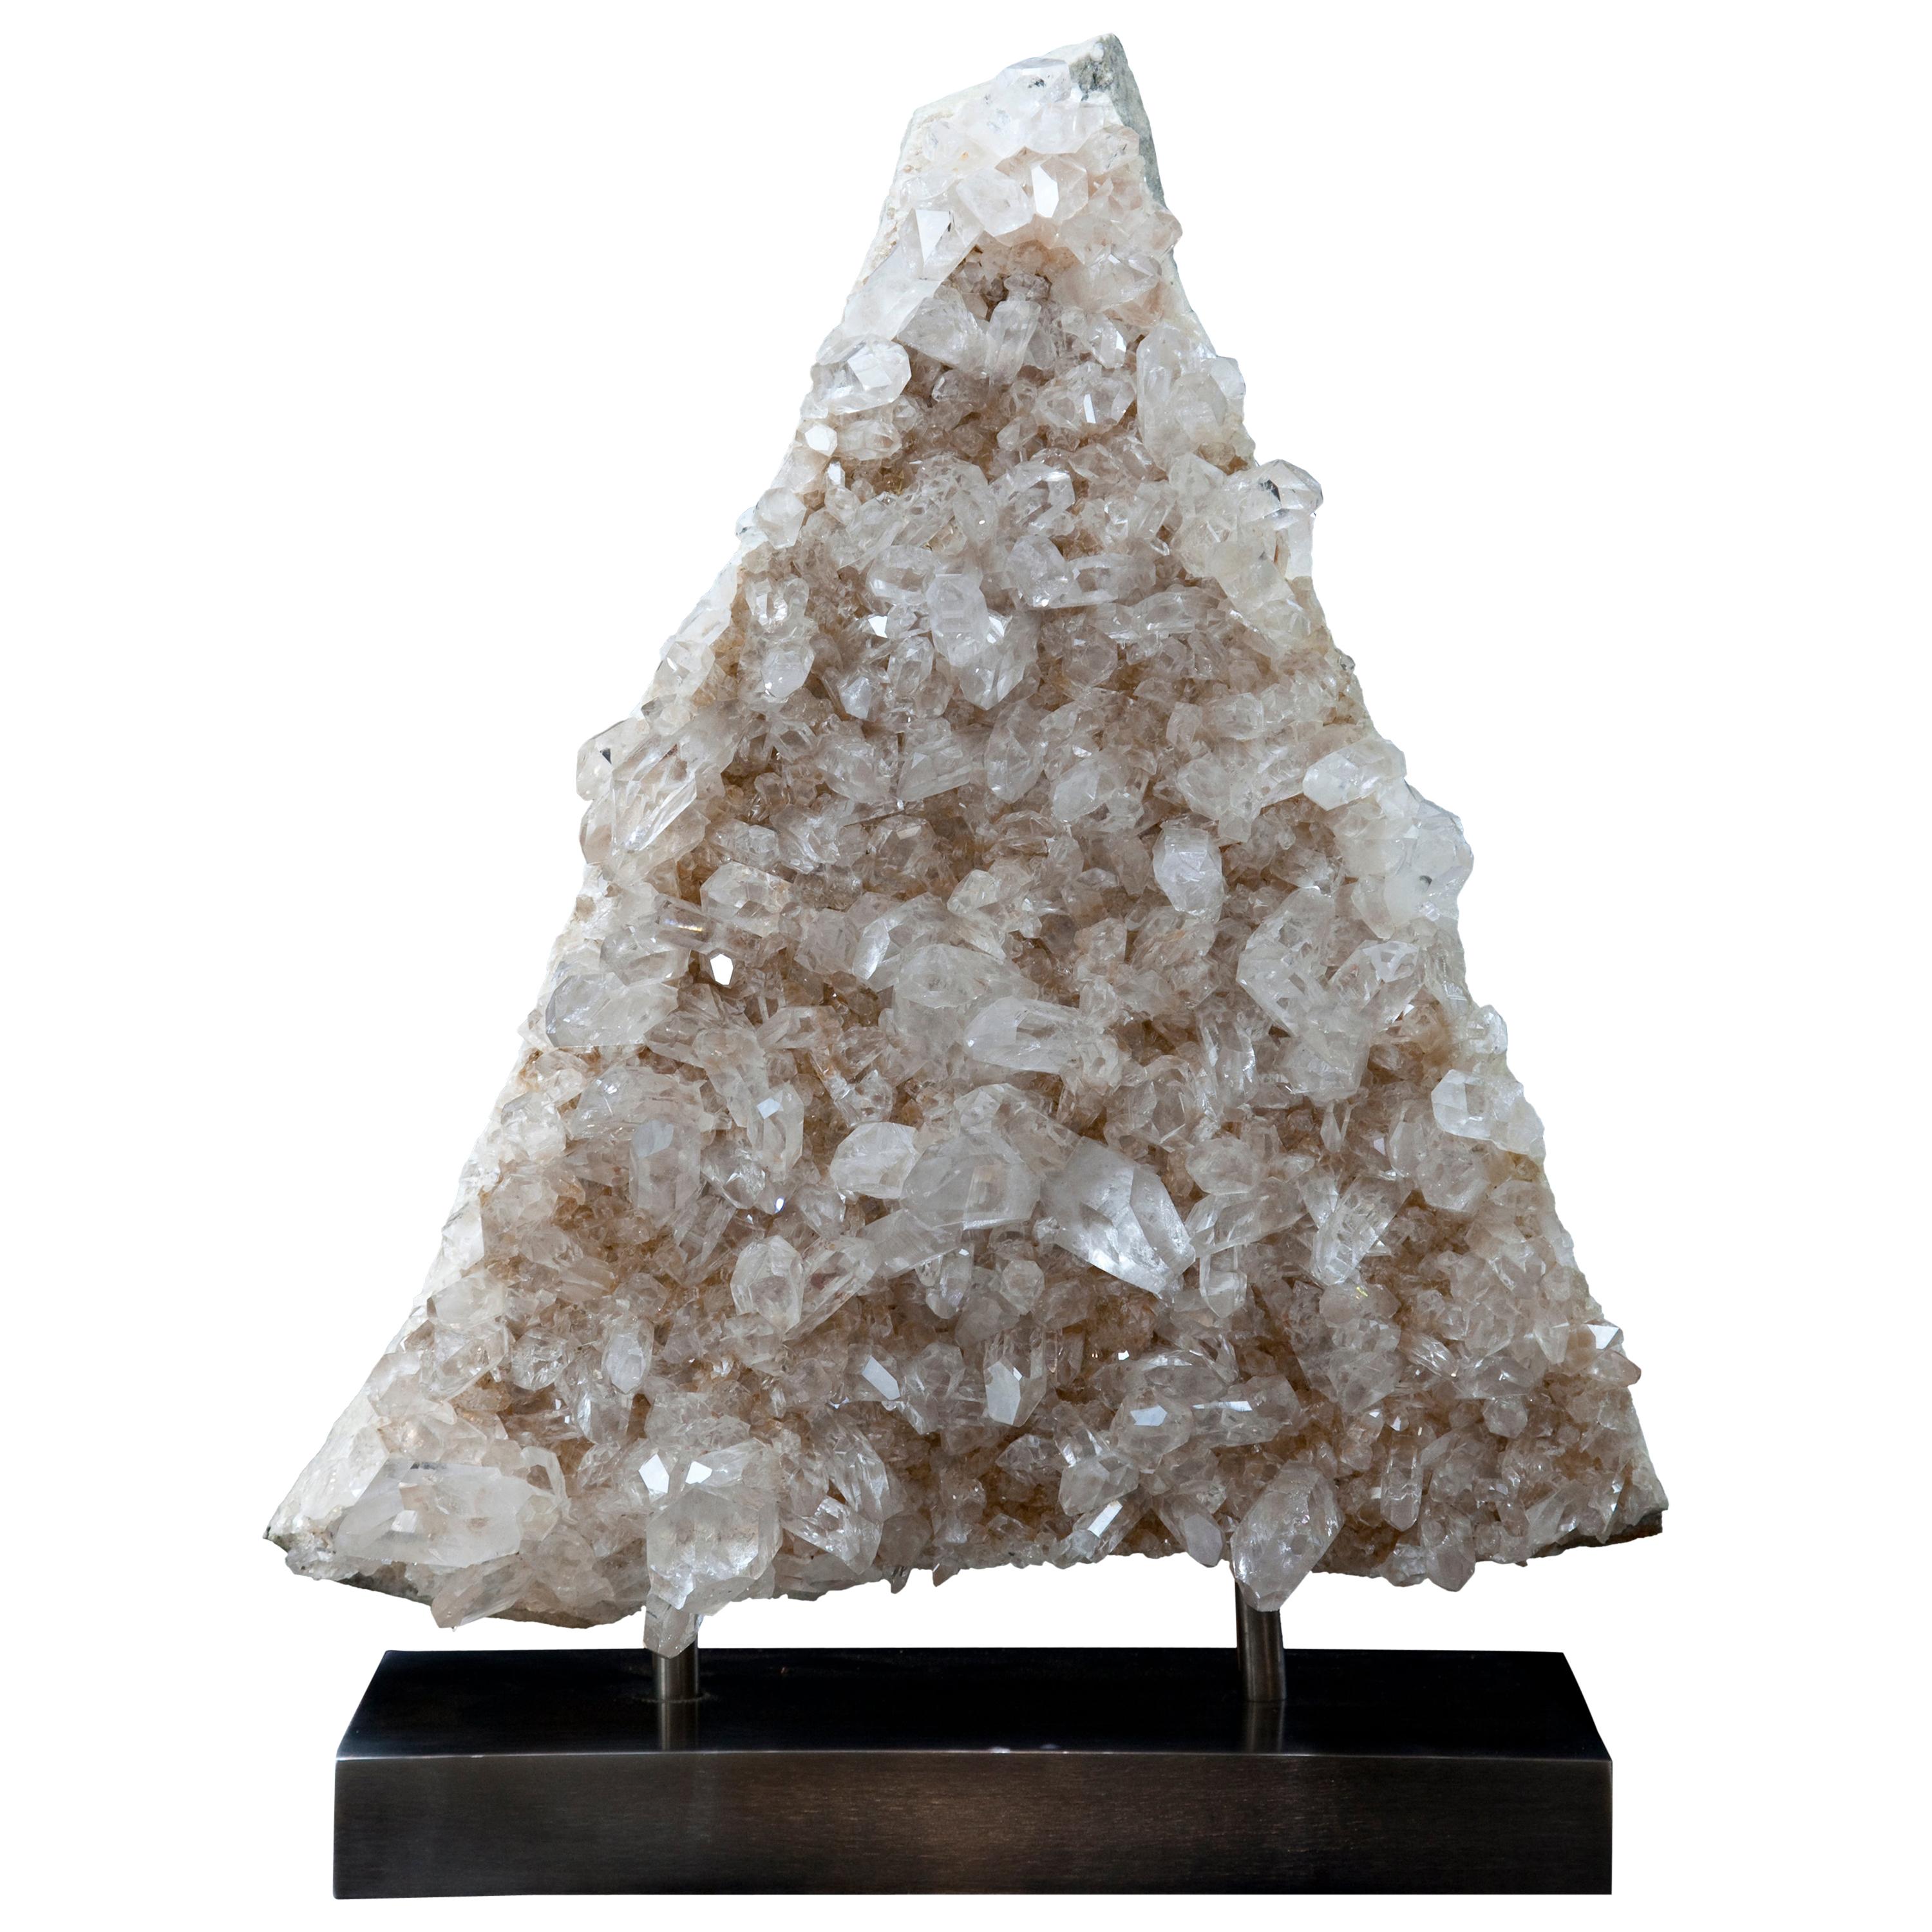 Une grande grappe exceptionnelle de cristal de quartz de qualité « A » du Arkansas